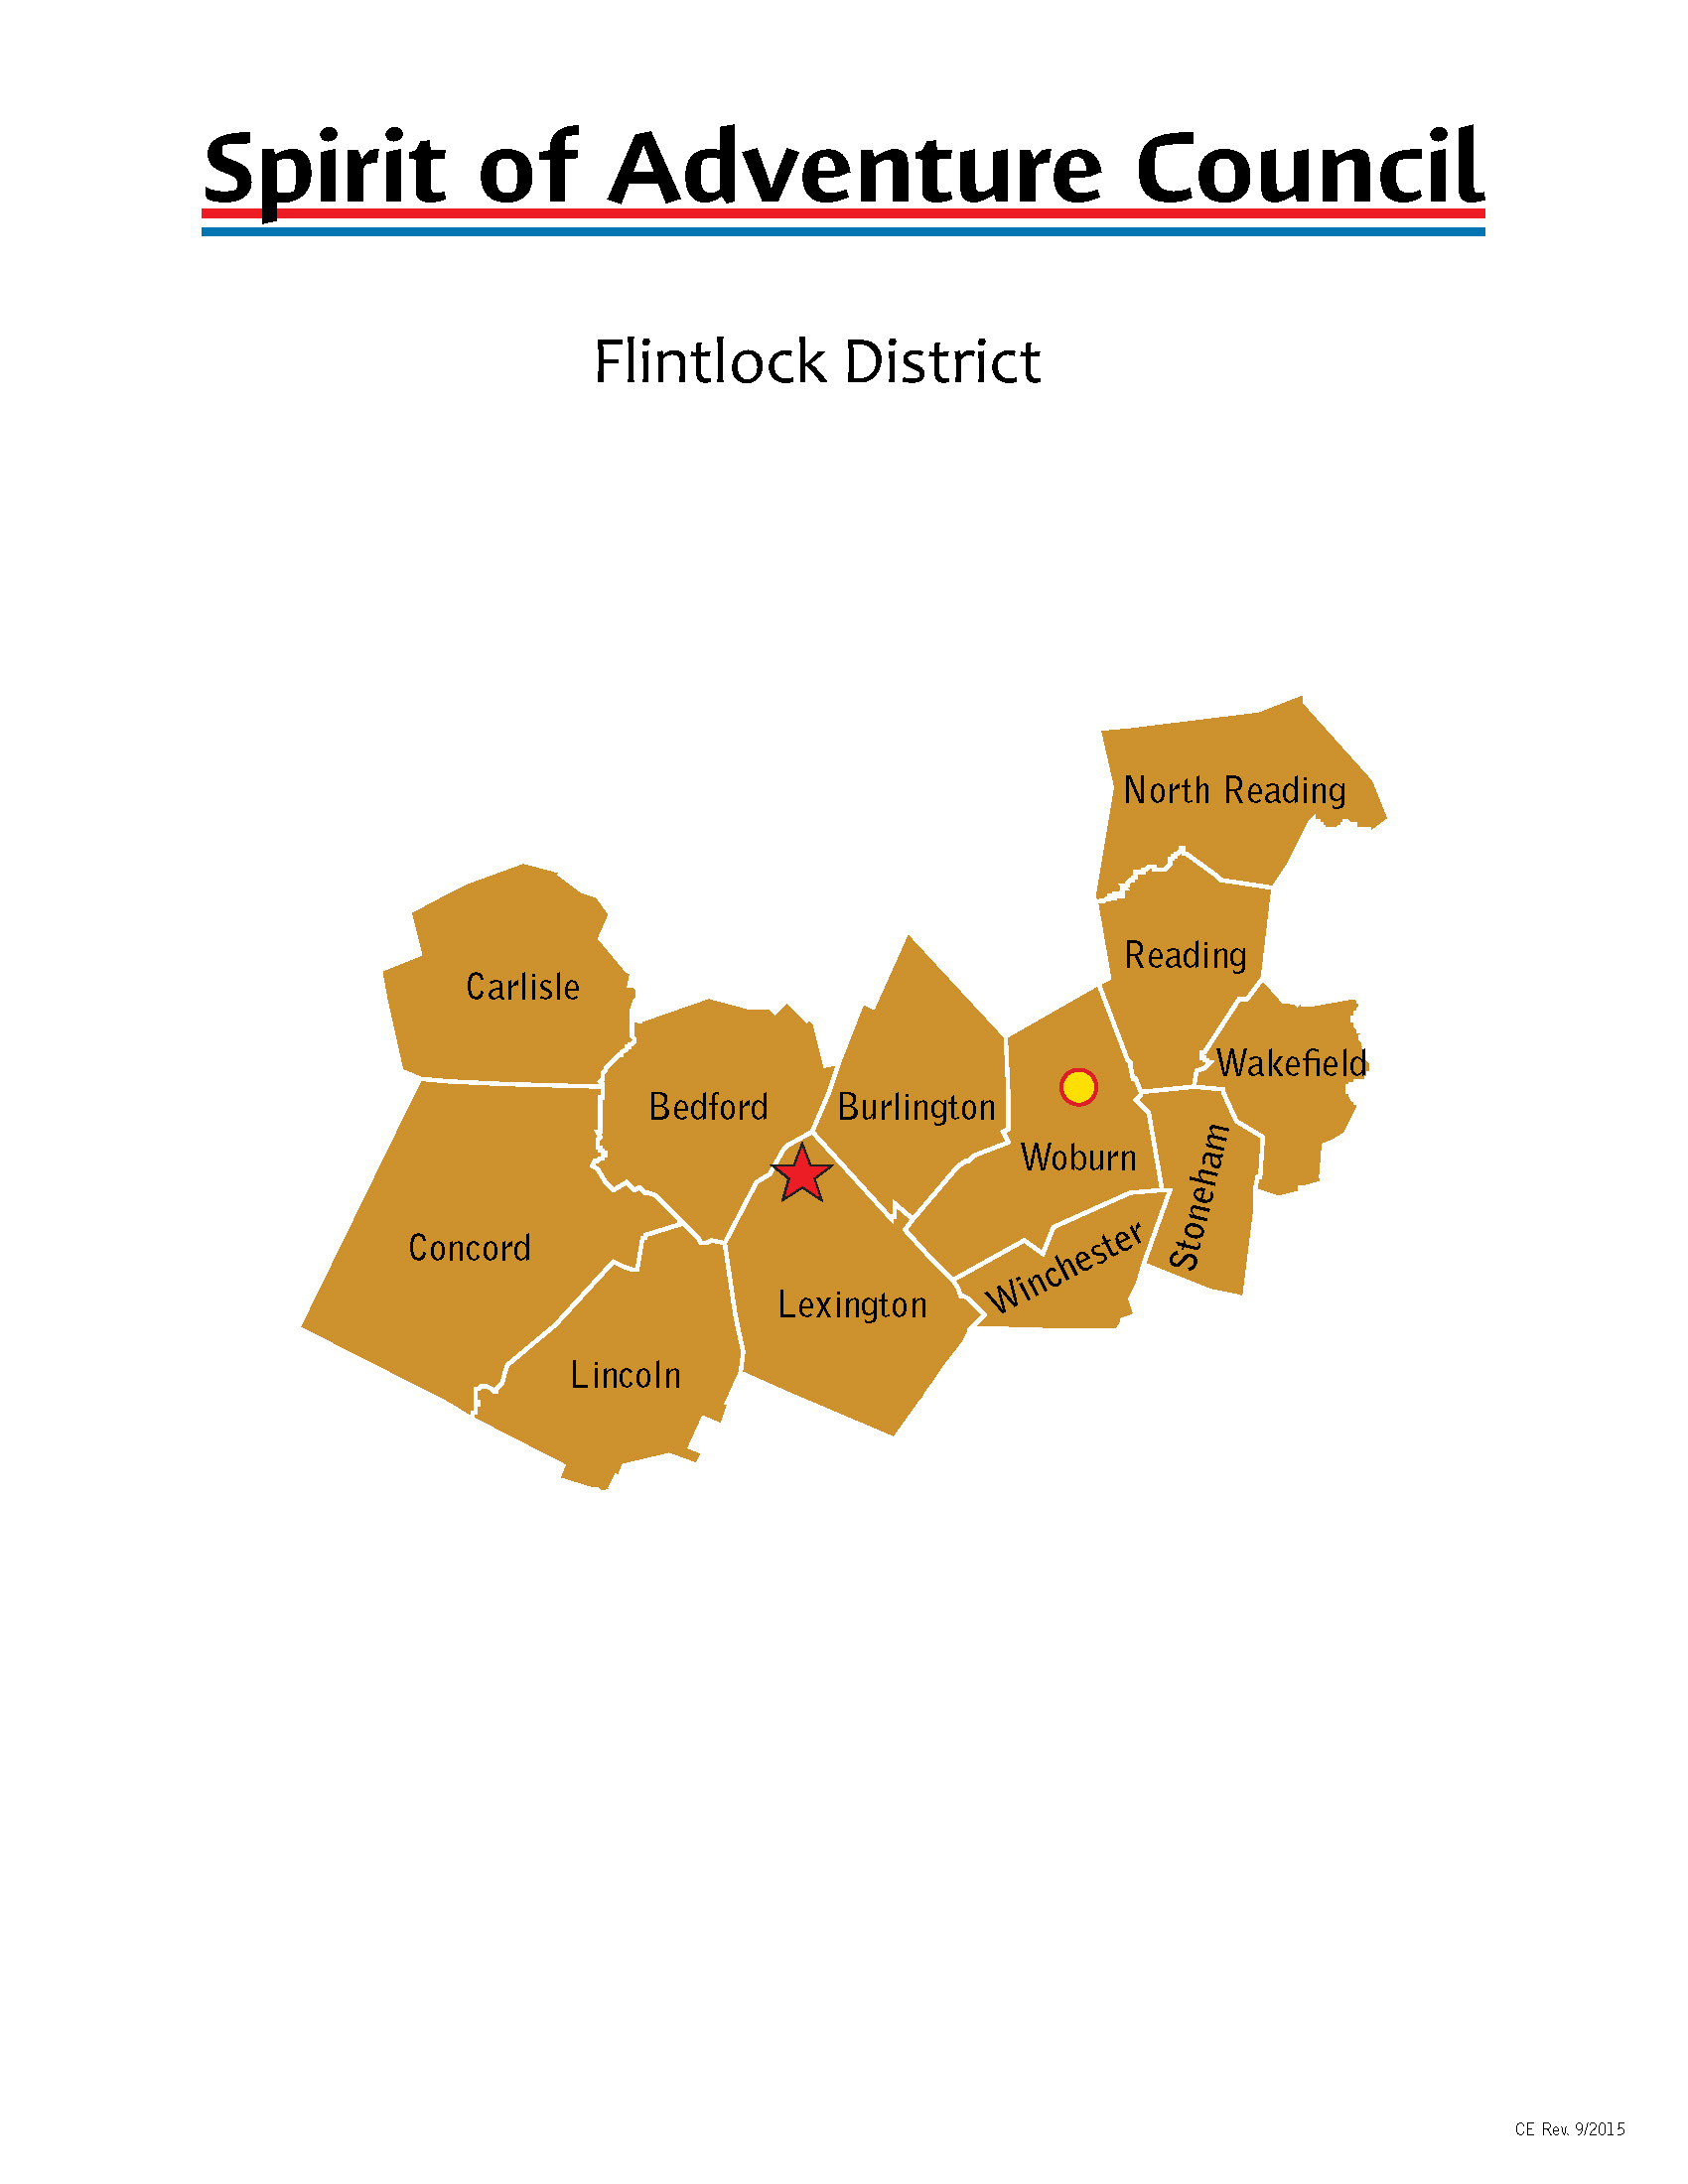 Flintlock District